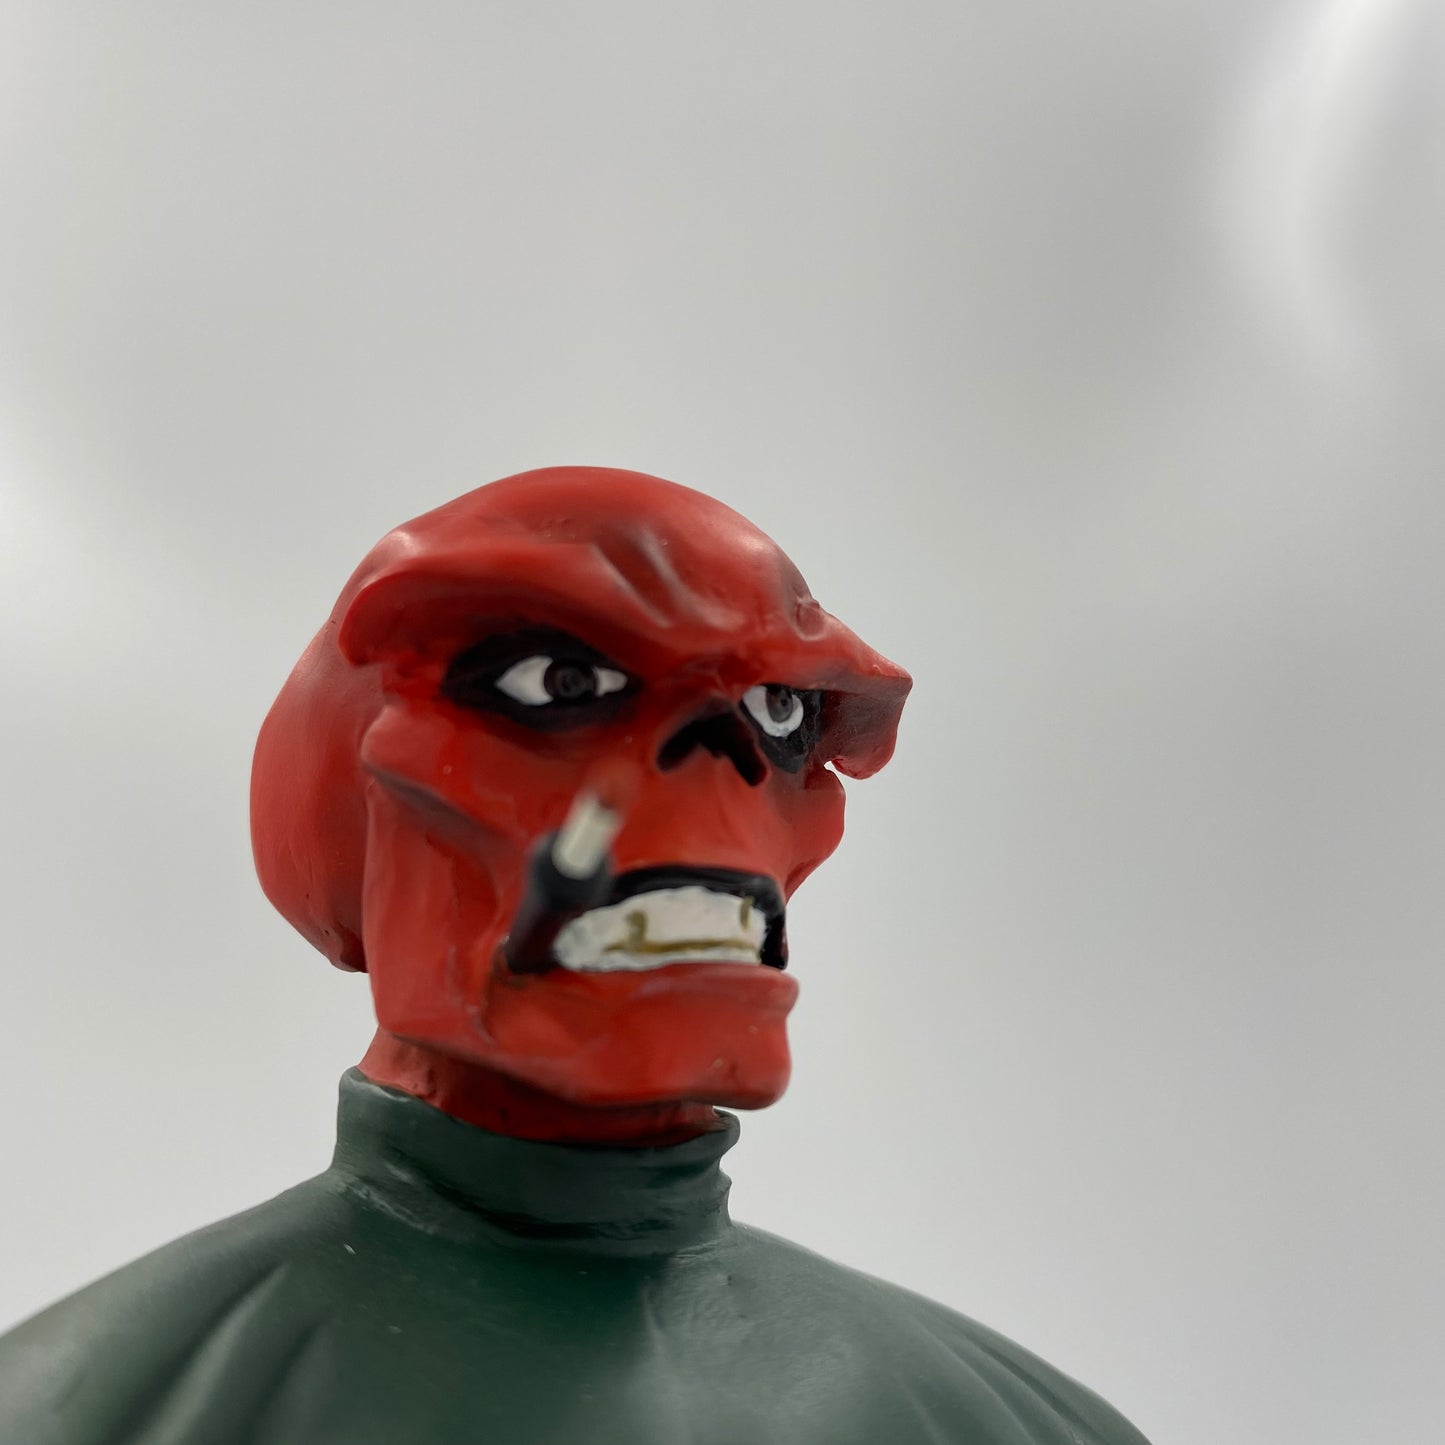 Red Skull Marvel mini-bust (1999) Bowen Designs